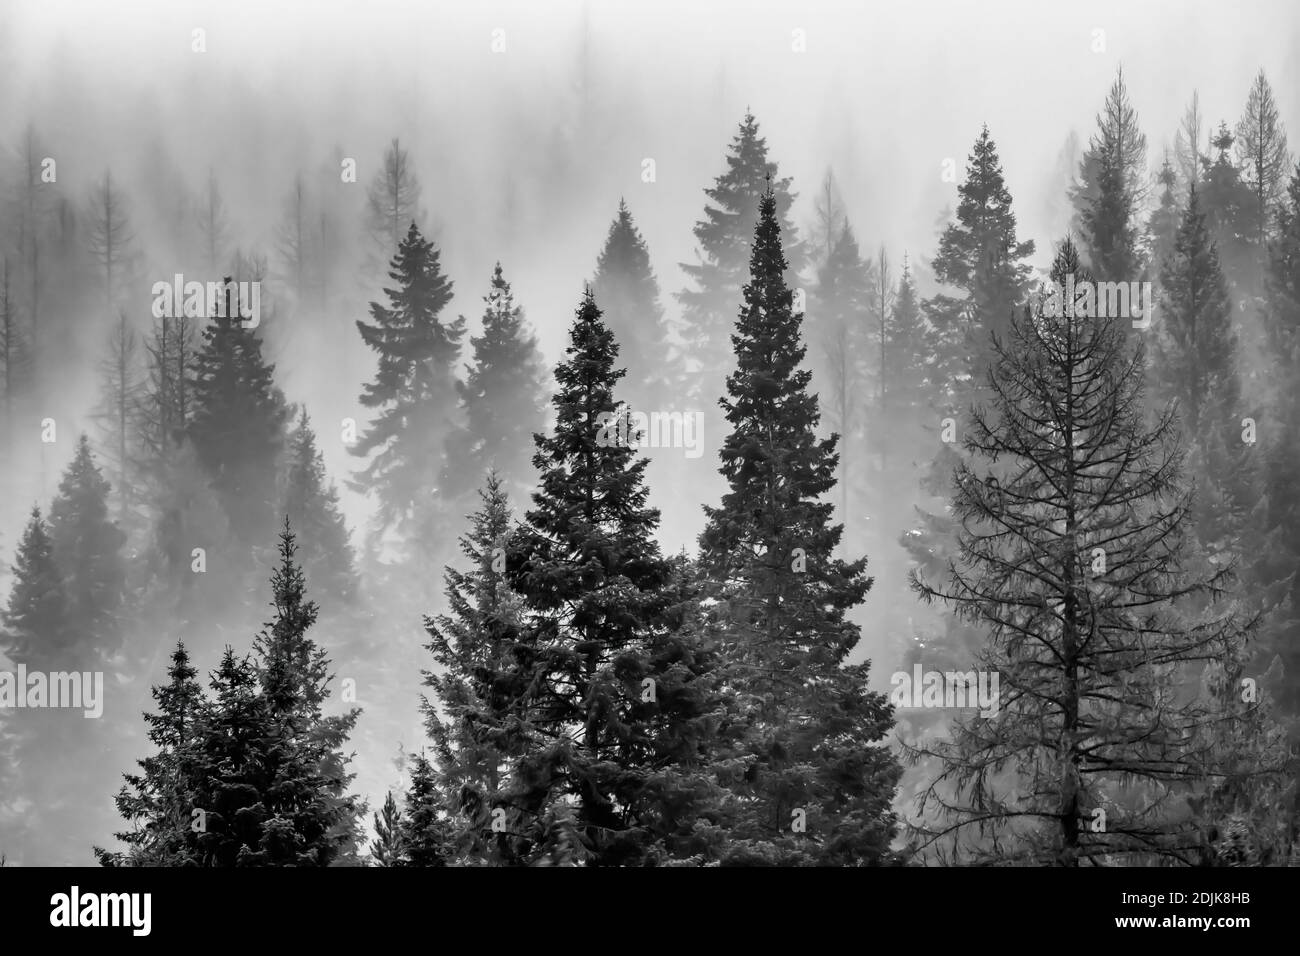 Montañas cubiertas de alerce occidental y otros árboles de coníferas y parcialmente cubiertas de nubes y niebla, vistas desde la I-90 en Idaho y Montana, EE.UU Foto de stock